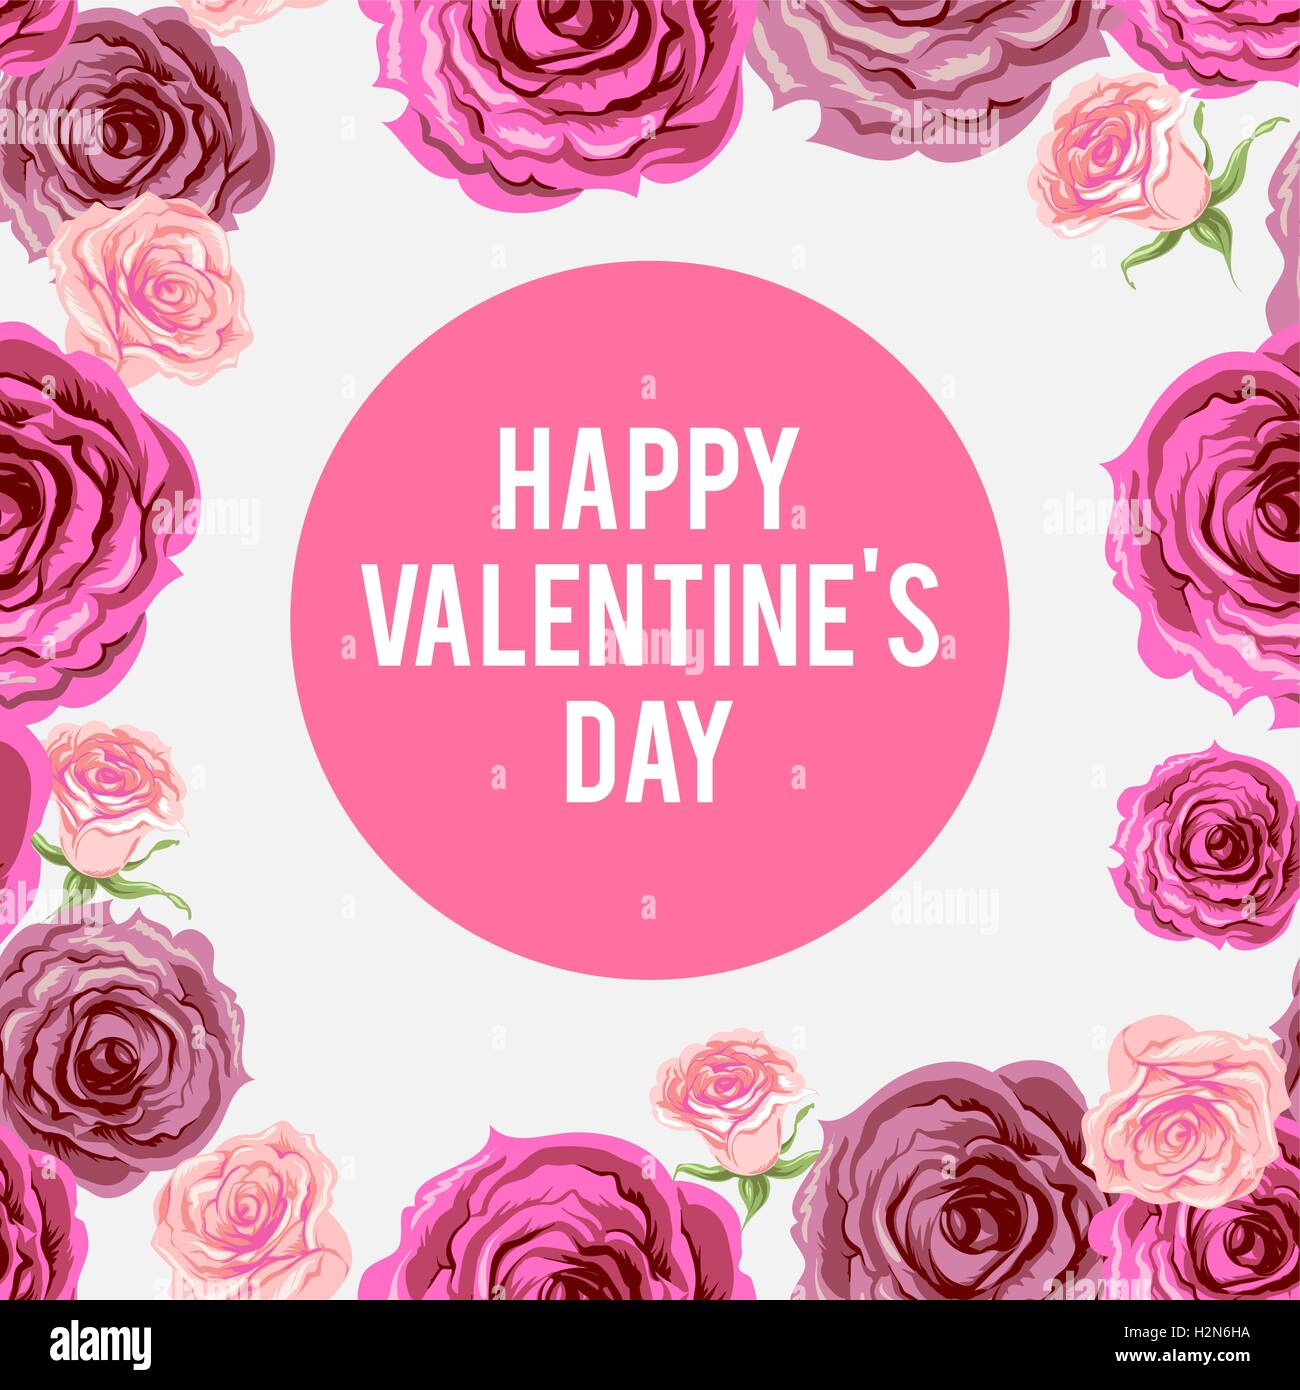 Happy Valentine's day Stock Vector